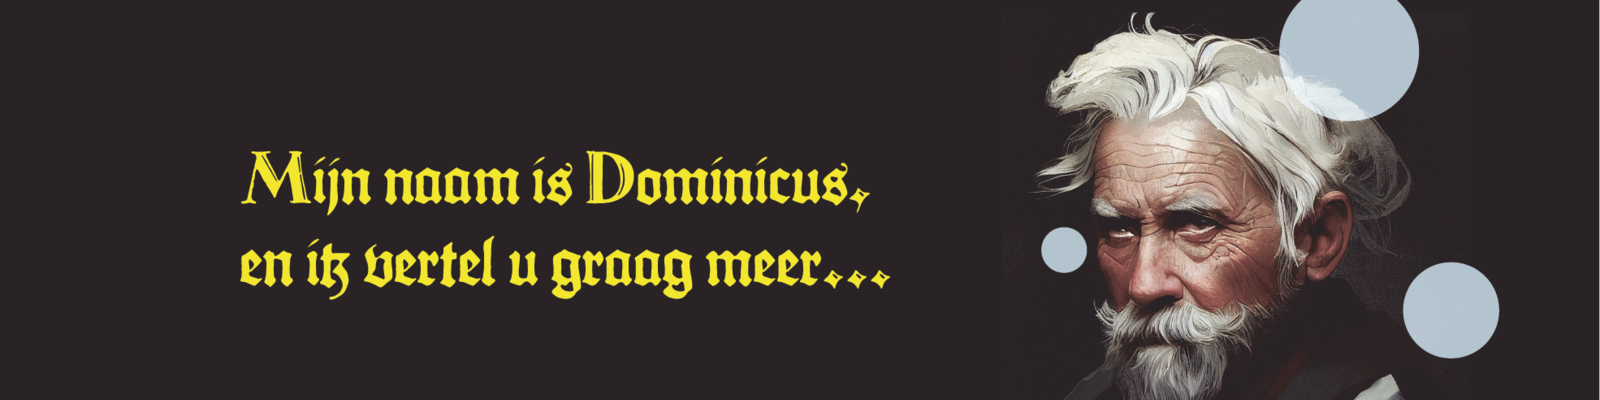 dominicus-website